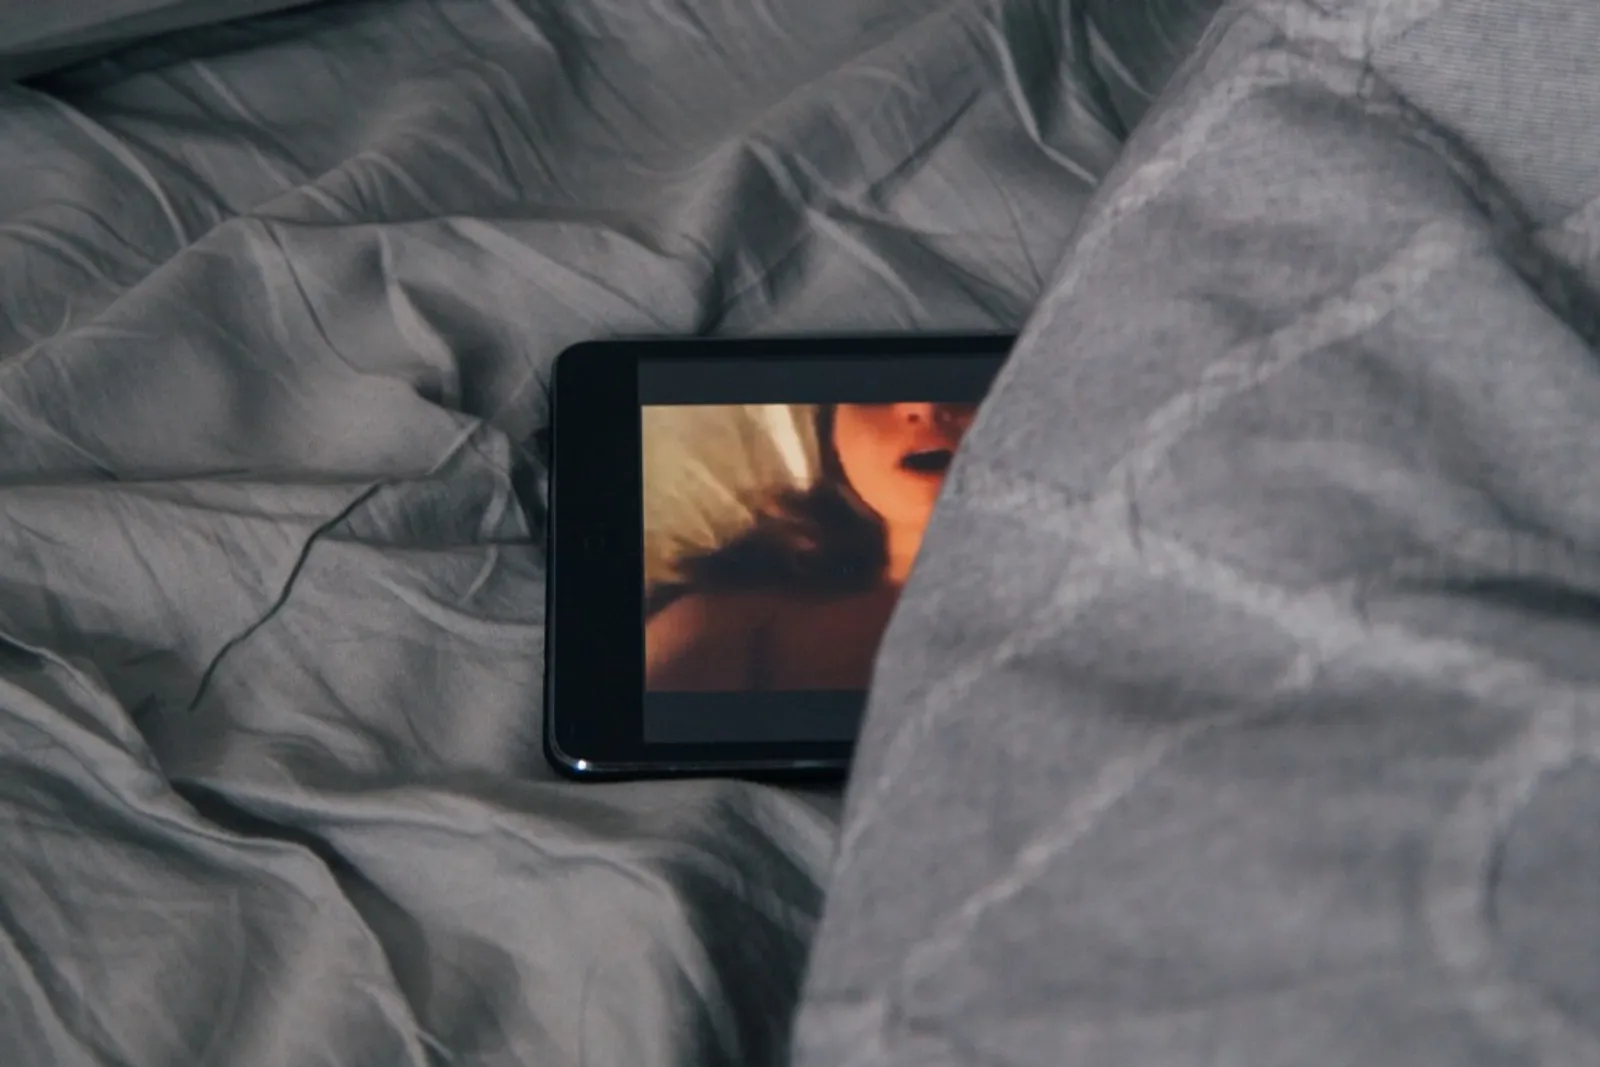 Yang Harus Kamu Tahu Tentang Realita Seks dalam Film Porno